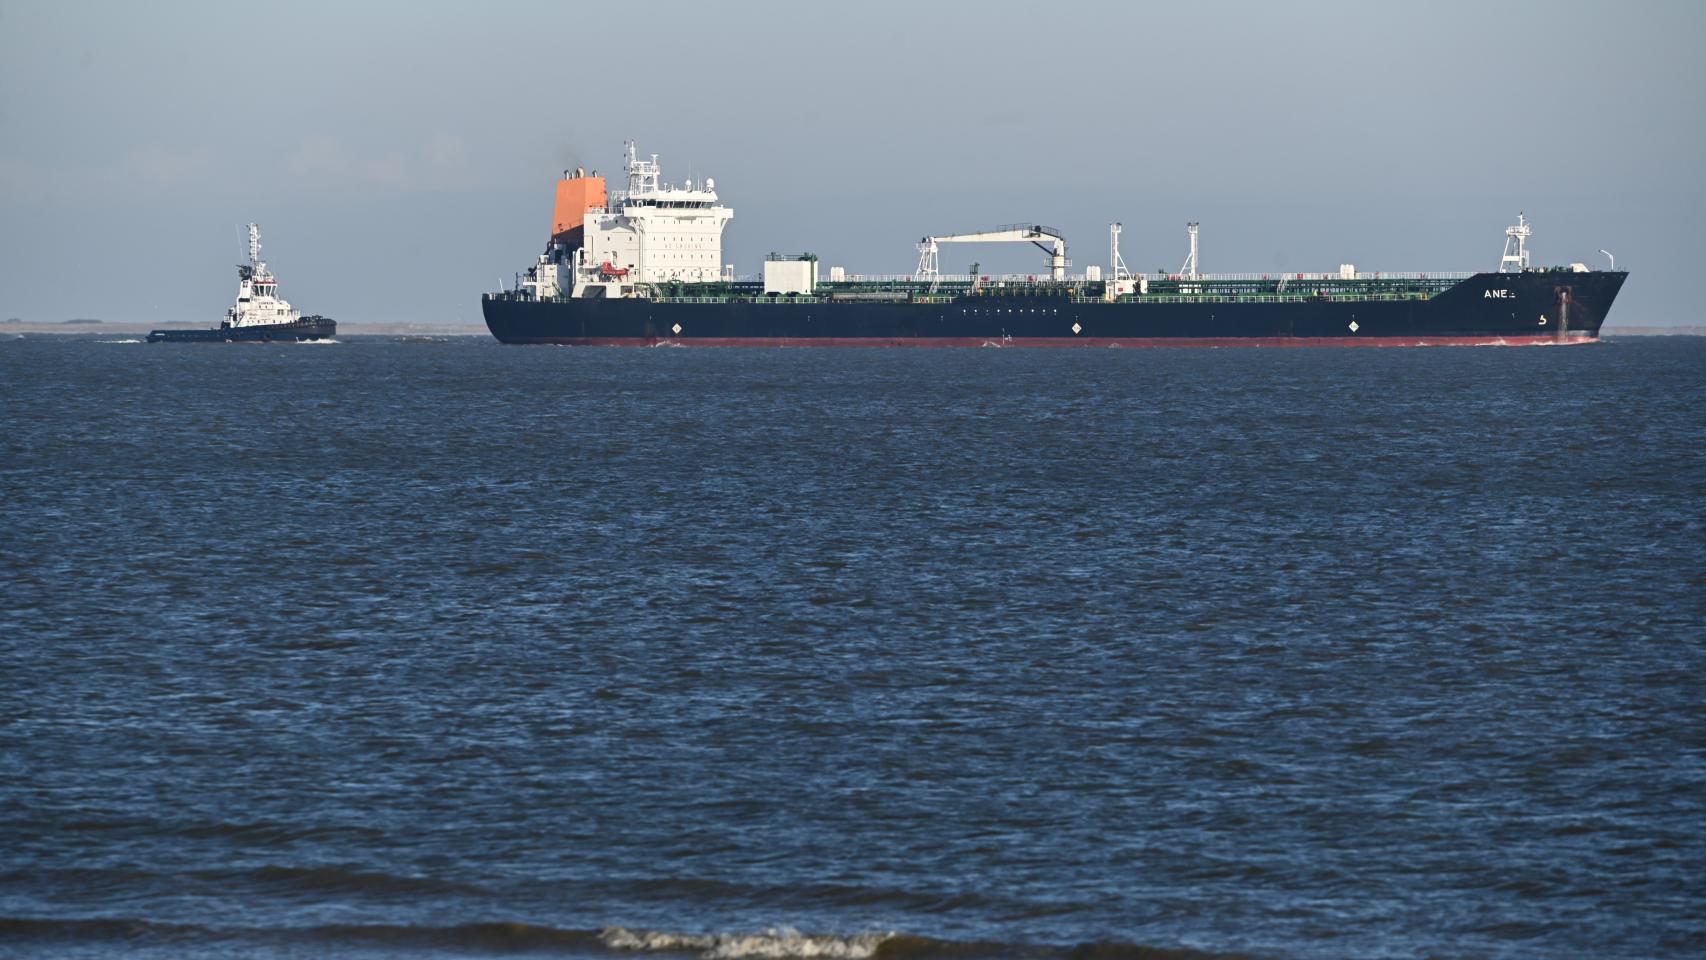 El petrolero Ane navega en el Mar del Norte y va acompañado de dos remolcadores.